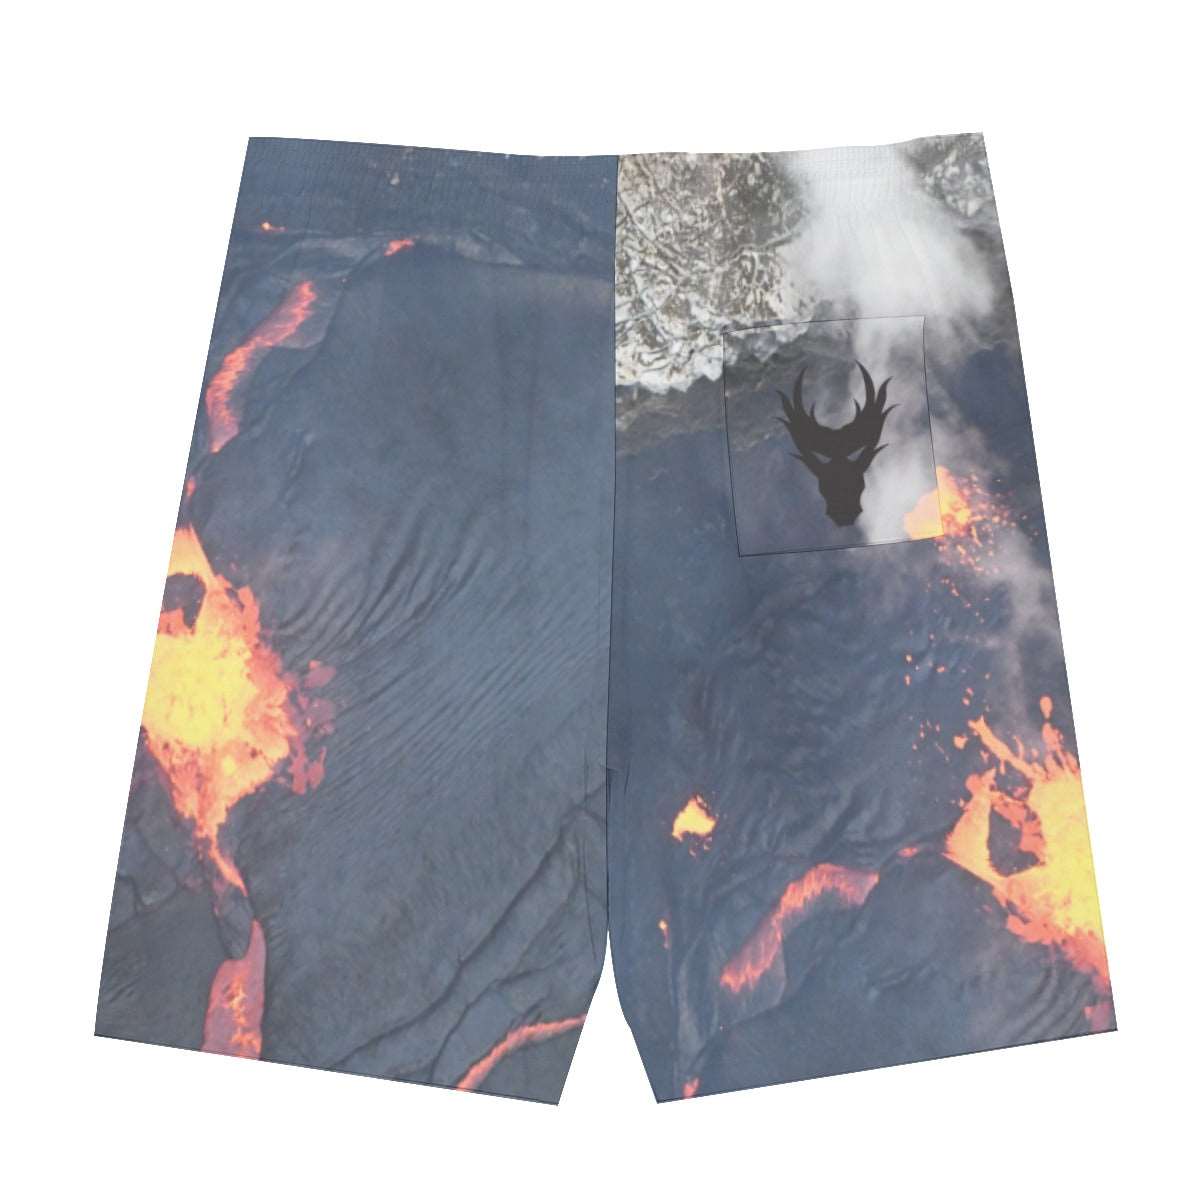 Fire inside OG dragon centered Men's Sleeveless Vest And Shorts Sets